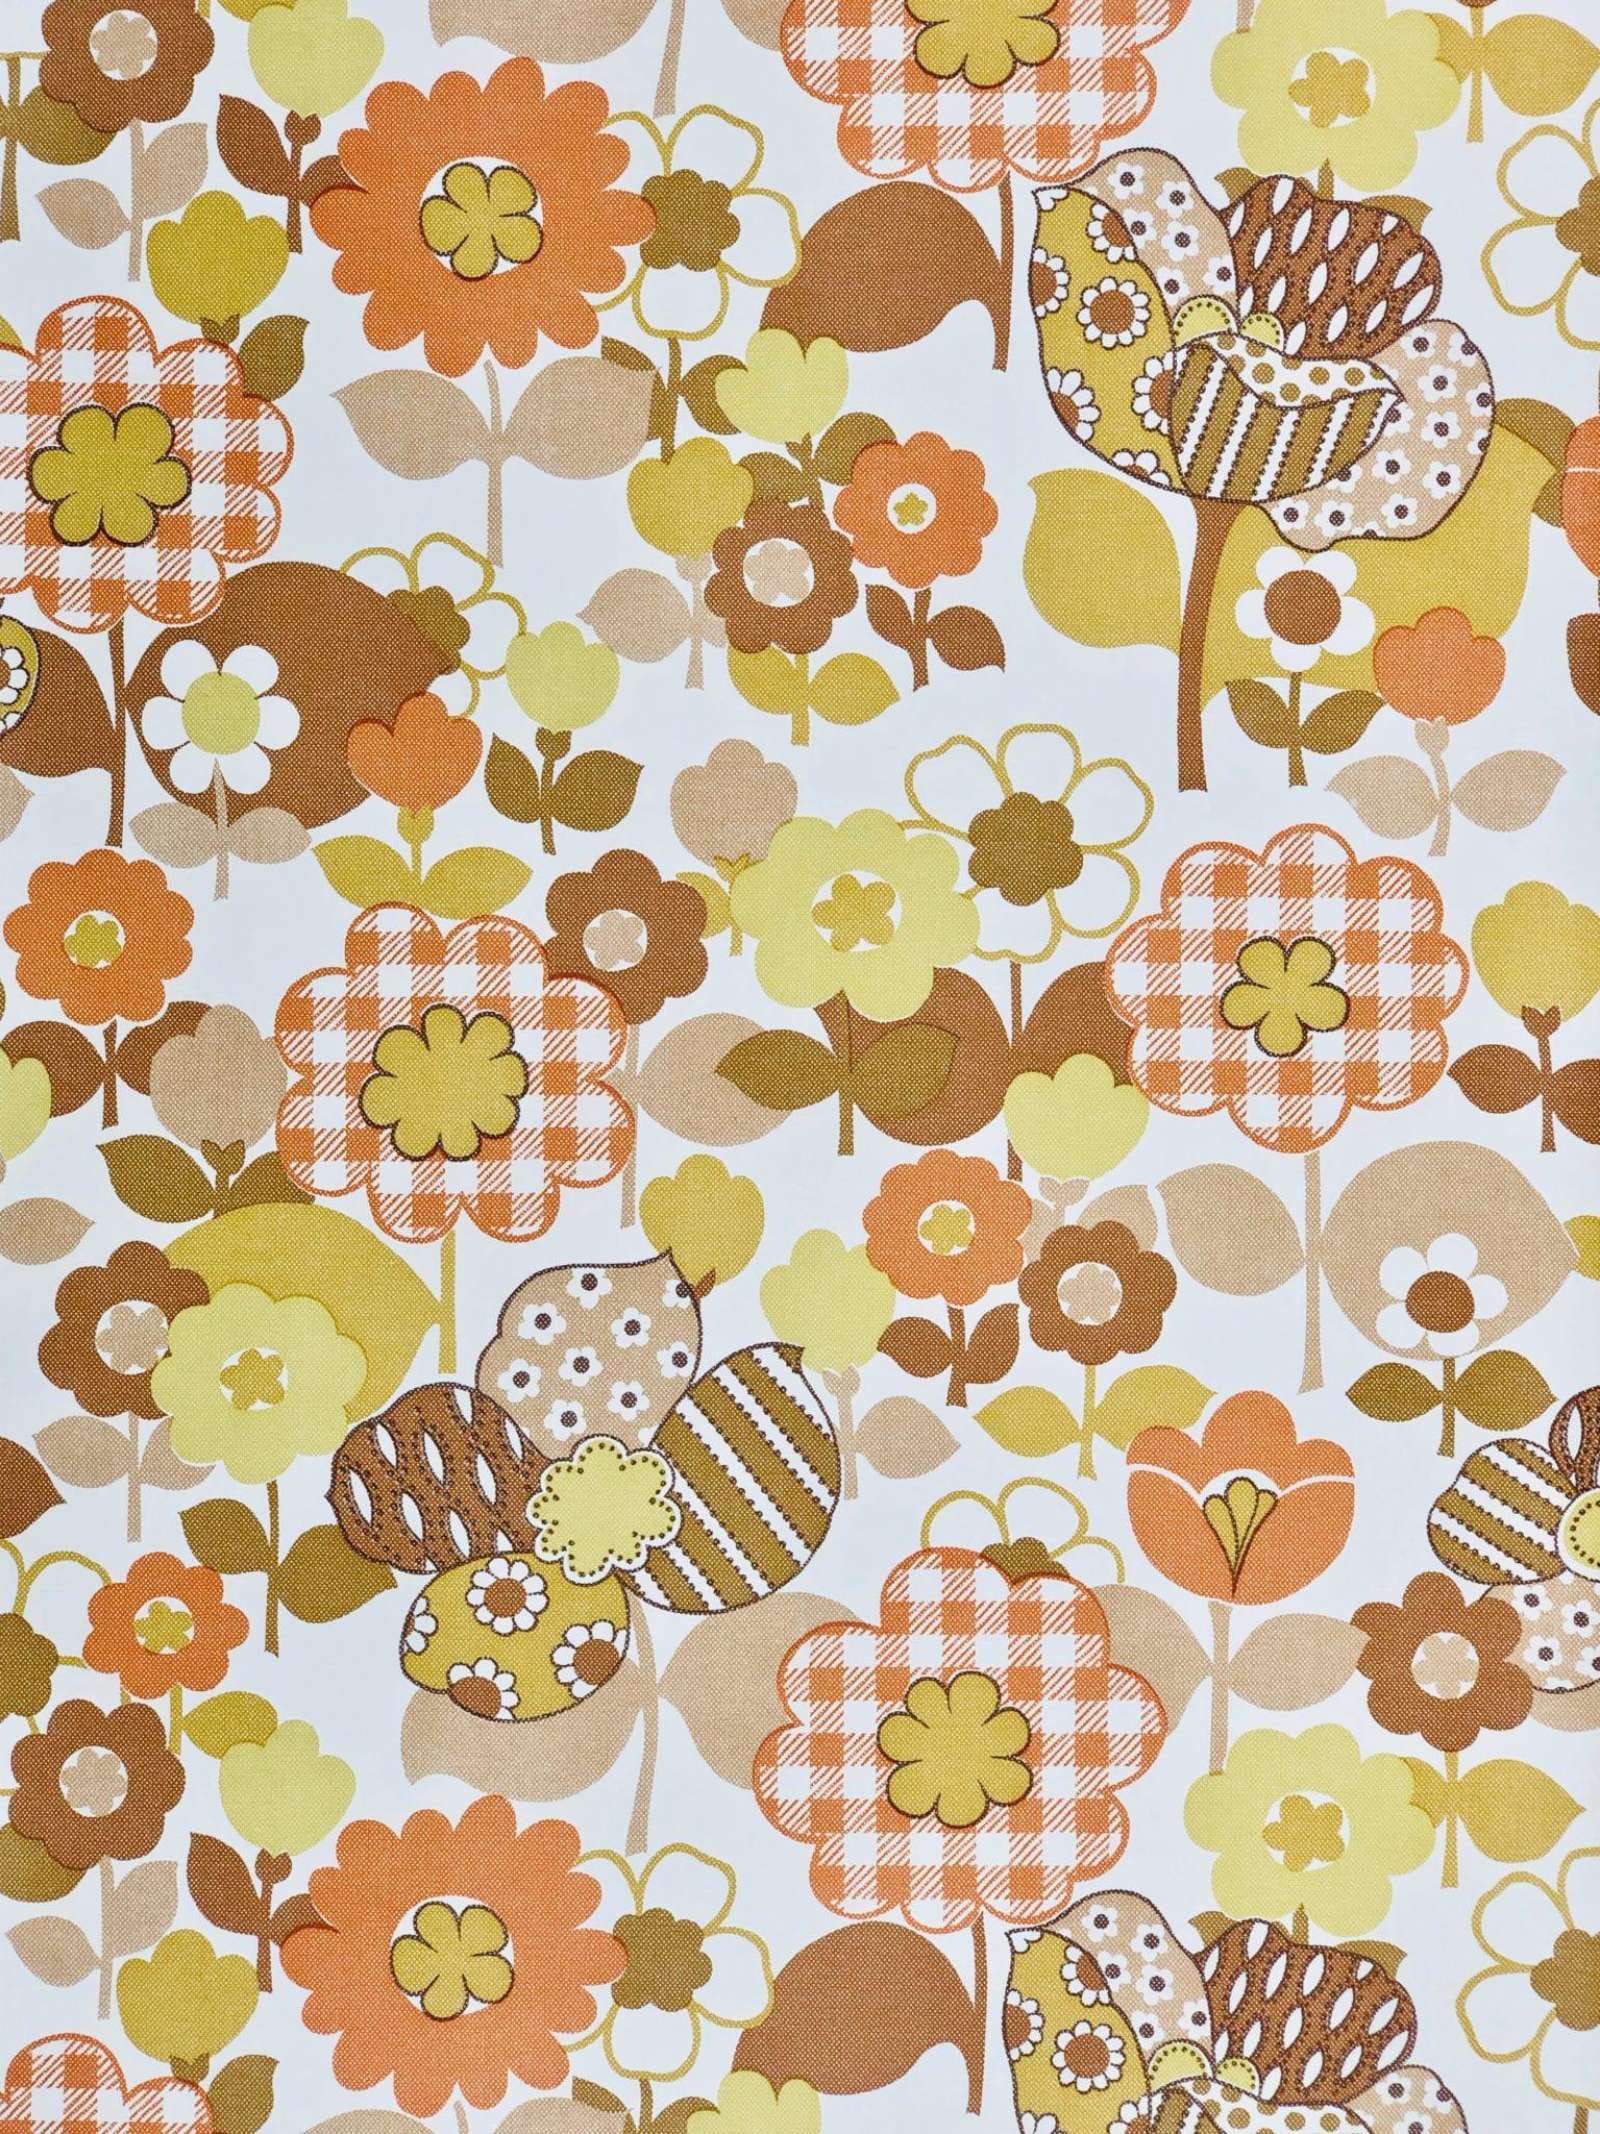 Orange Pattern Wallpapers - 4k, HD Orange Pattern Backgrounds on